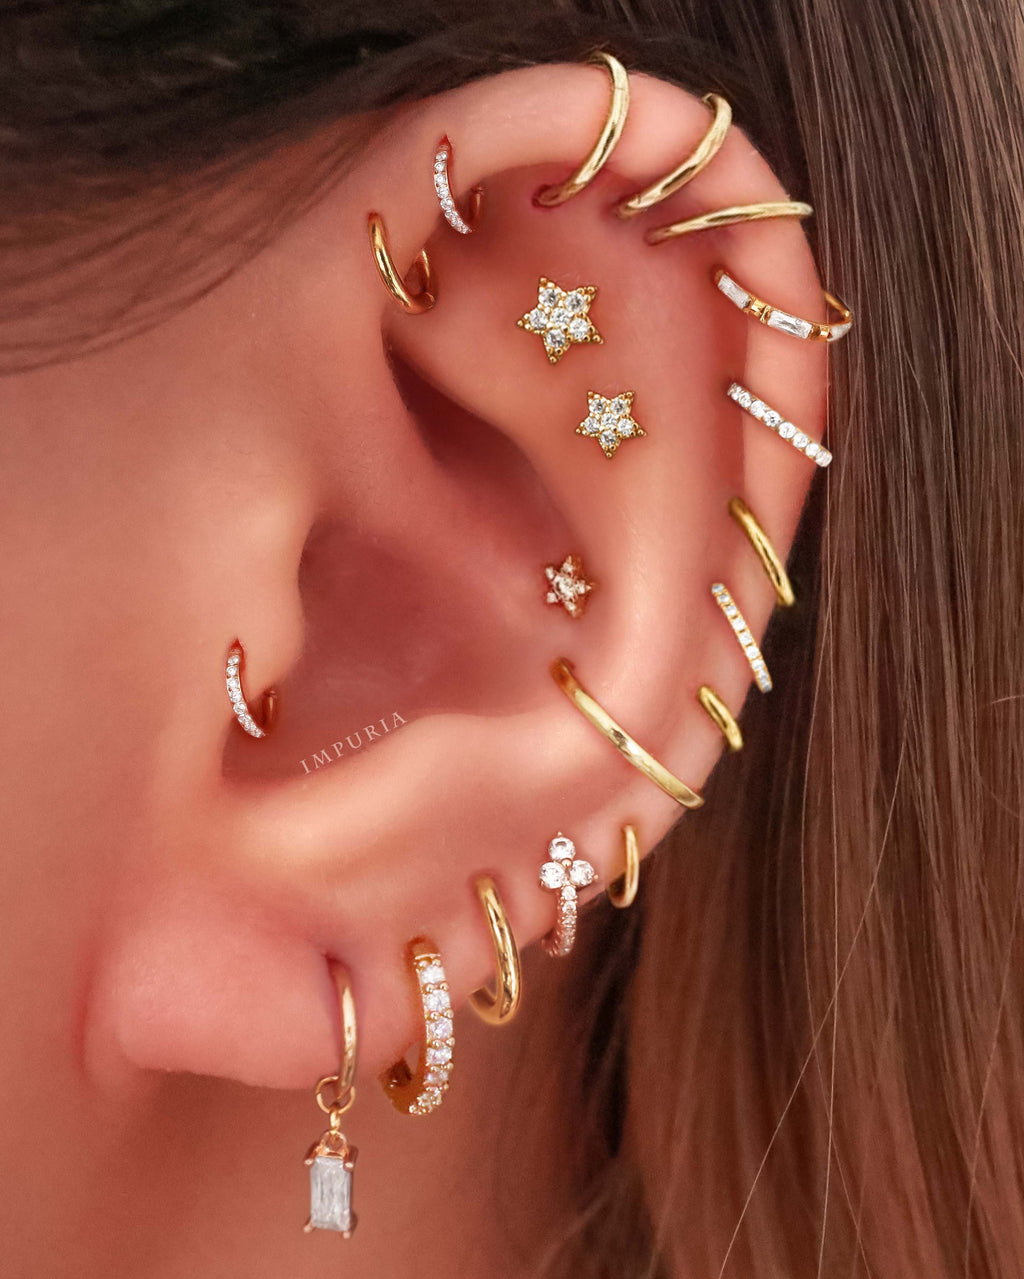 Studs - A fresh take on ear piercing & earrings